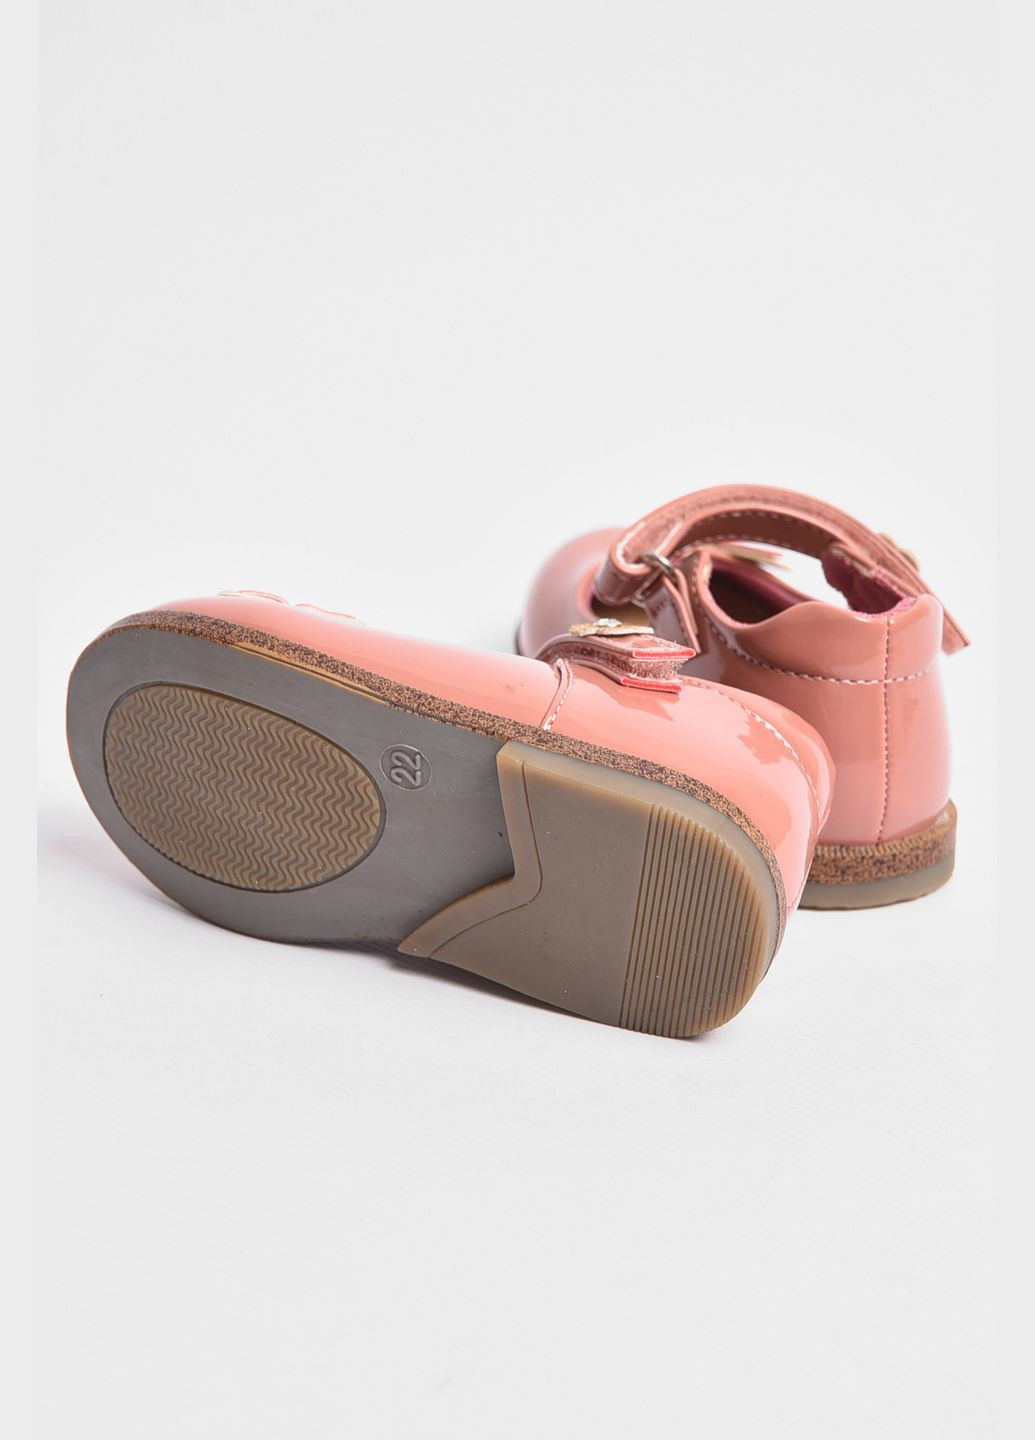 Туфлі дитячі для дівчинки рожевого кольору Let's Shop (290011276)